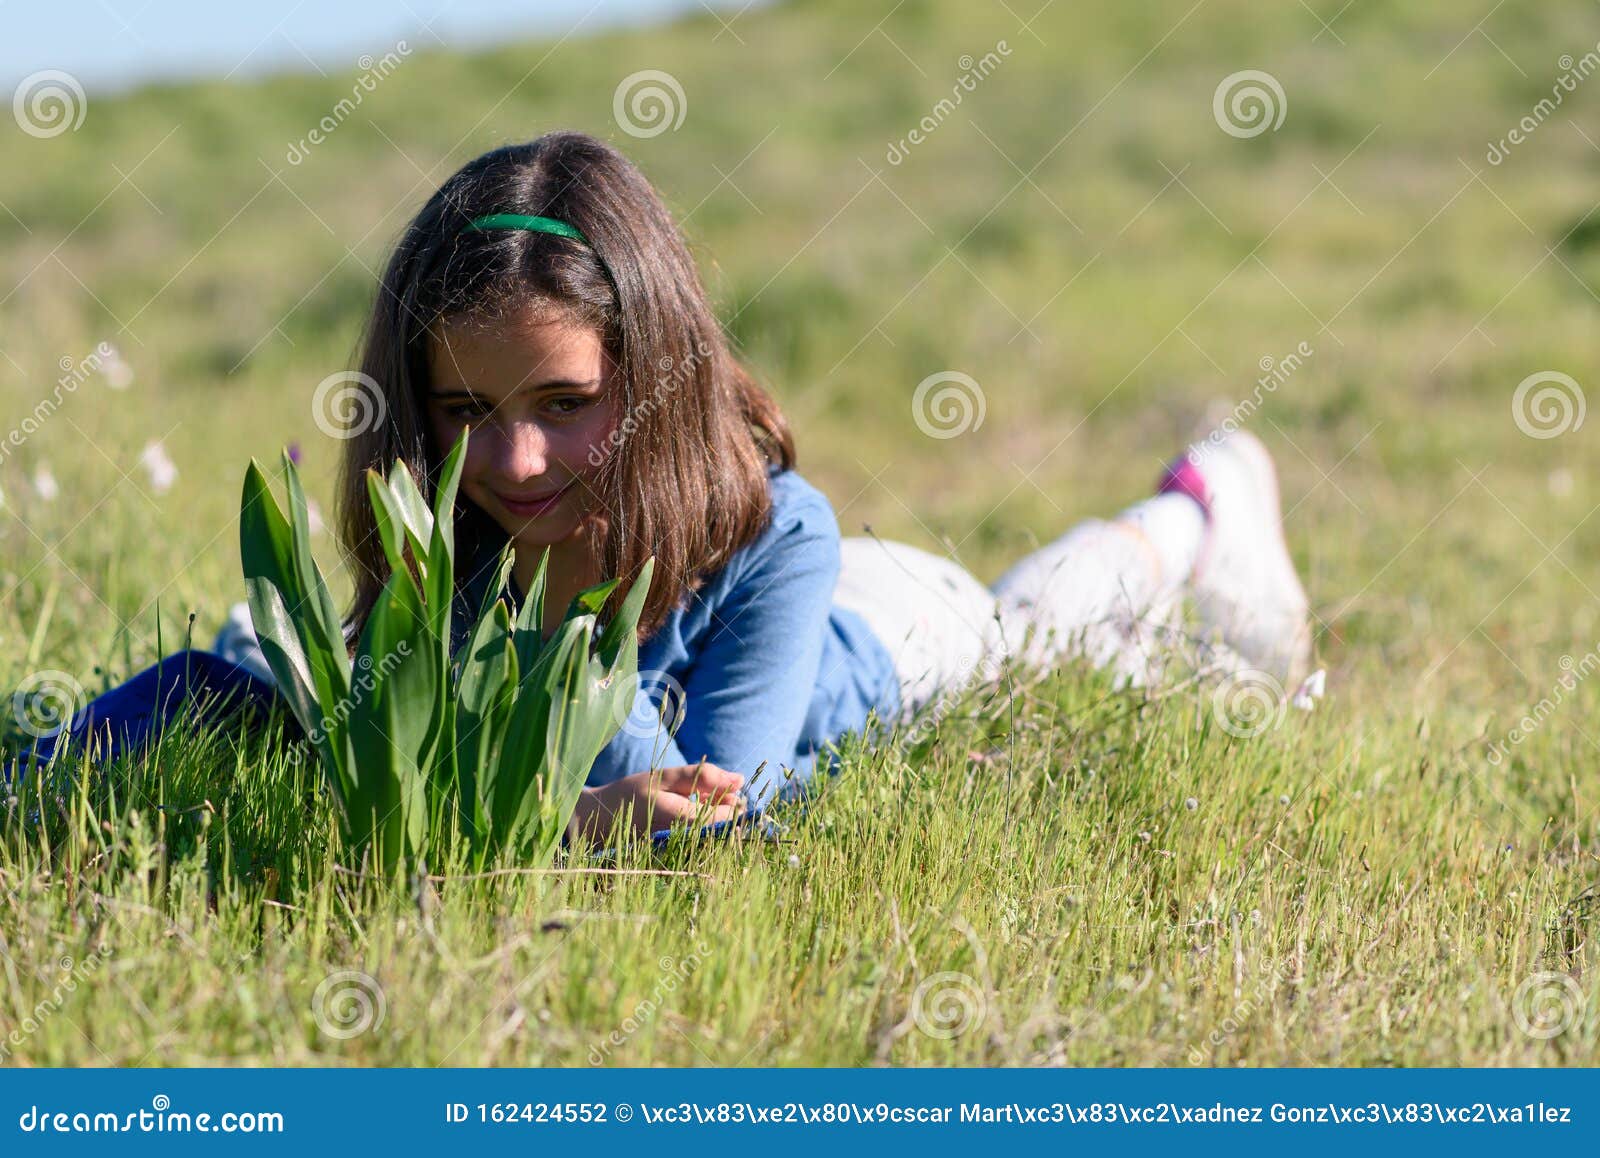 Petite fille allongée dans l'herbe (été 5-6 ans) Stock Photo